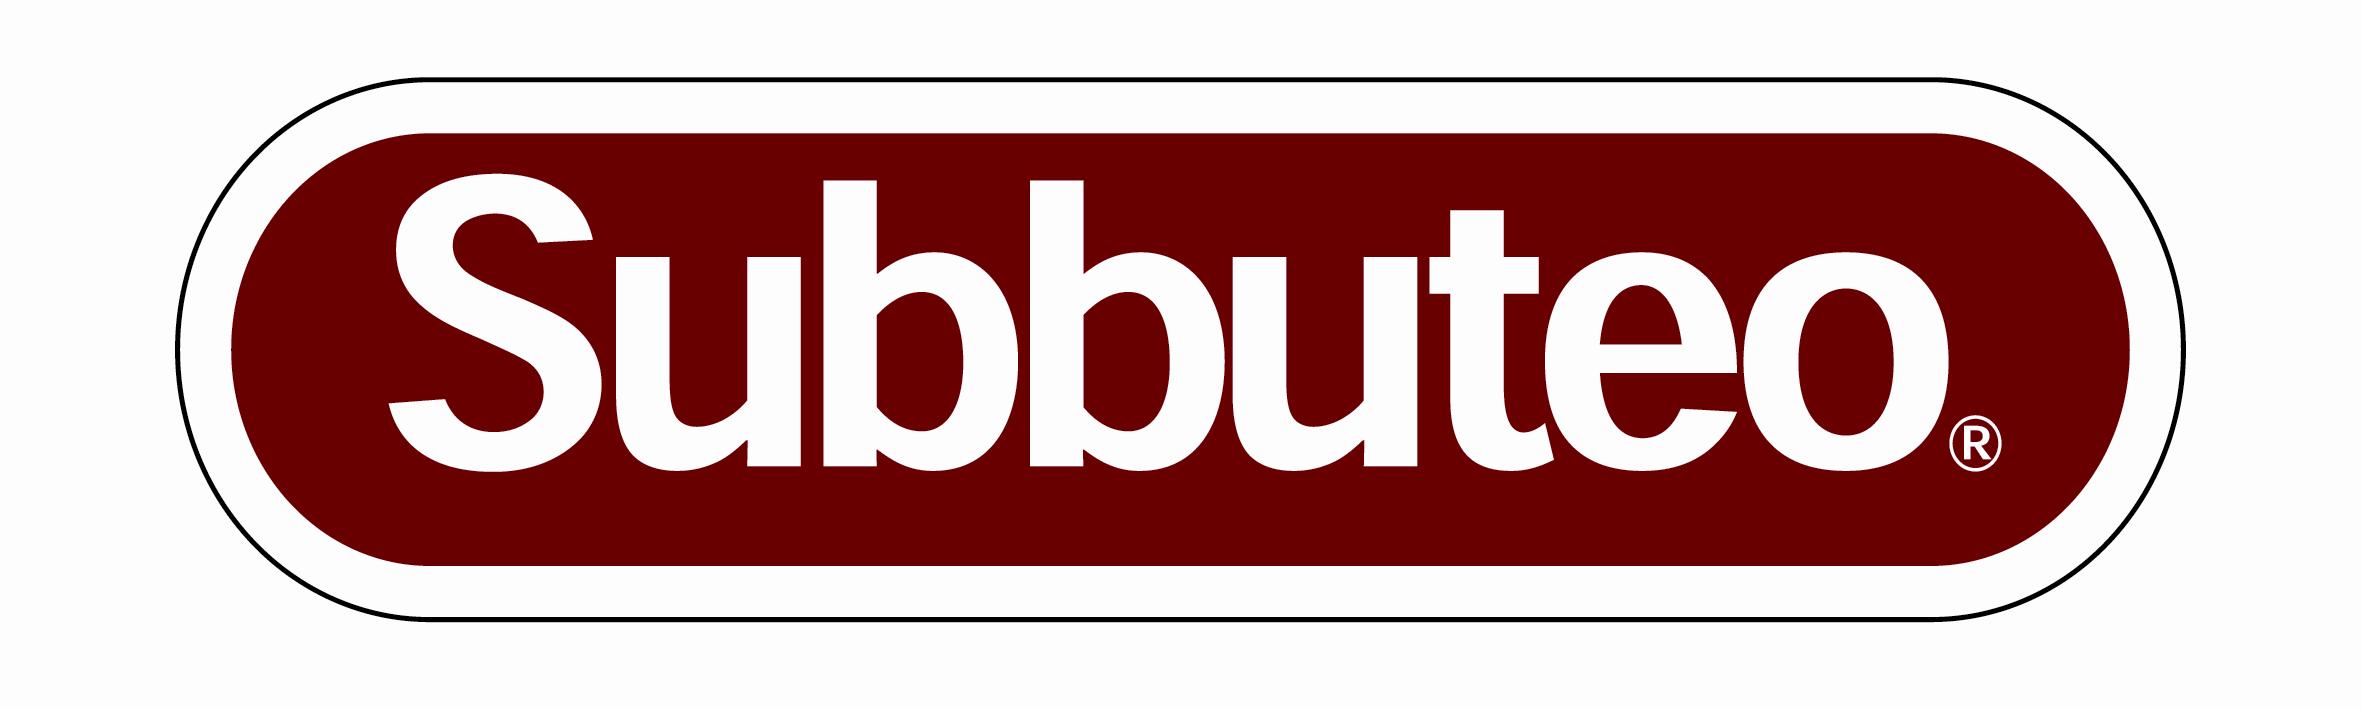 subbuteo-logo_tm5